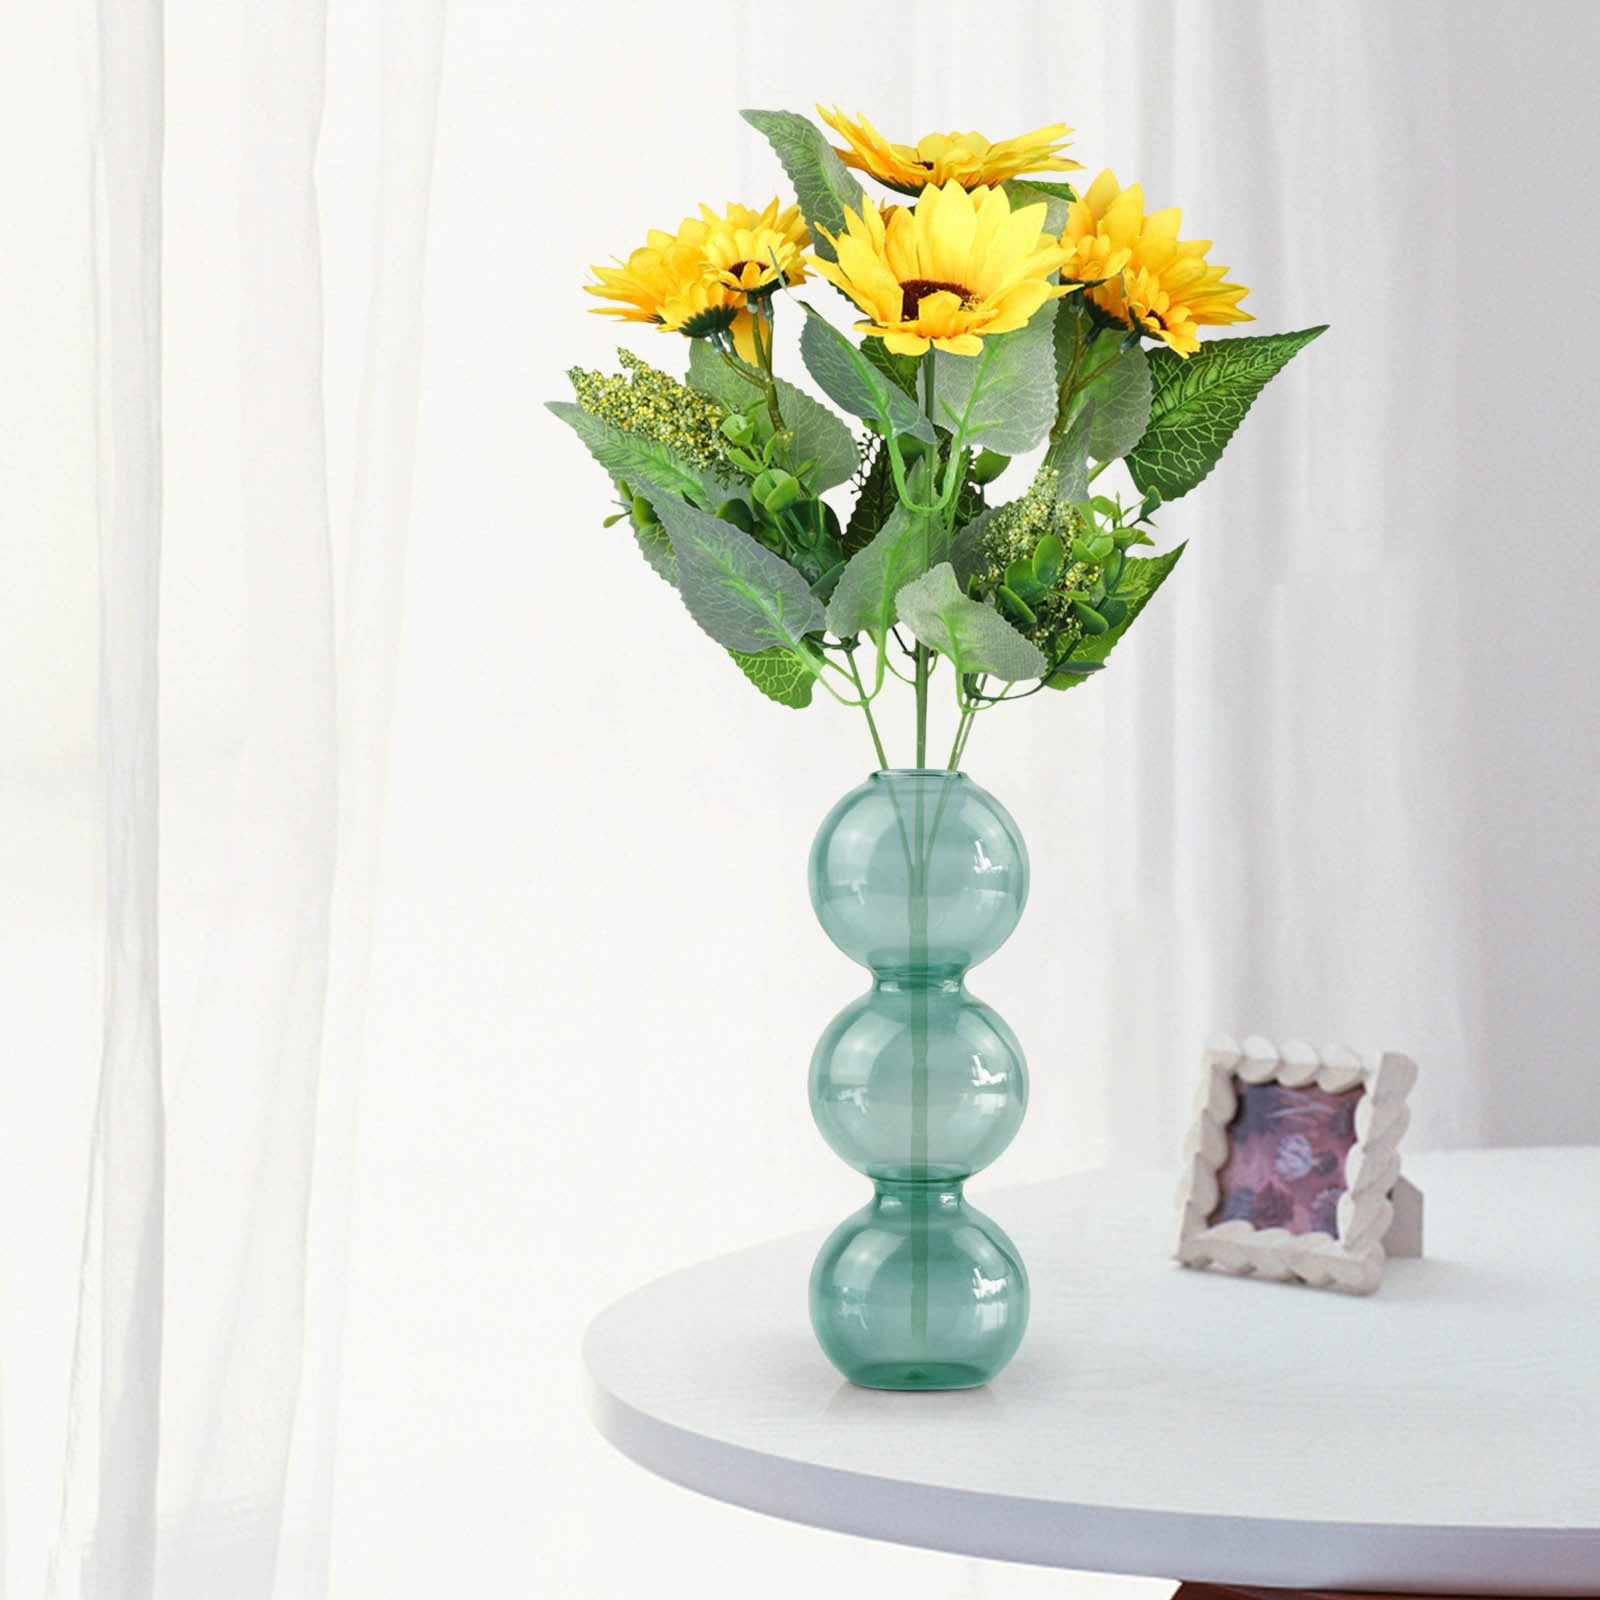 Rbckvxz Home Decor,Glass Bubble Flower Base Vase Glass Planter Airplant,Home Essentials, Adult Unisex, Size: 7.09 x 3.15 x 3.15